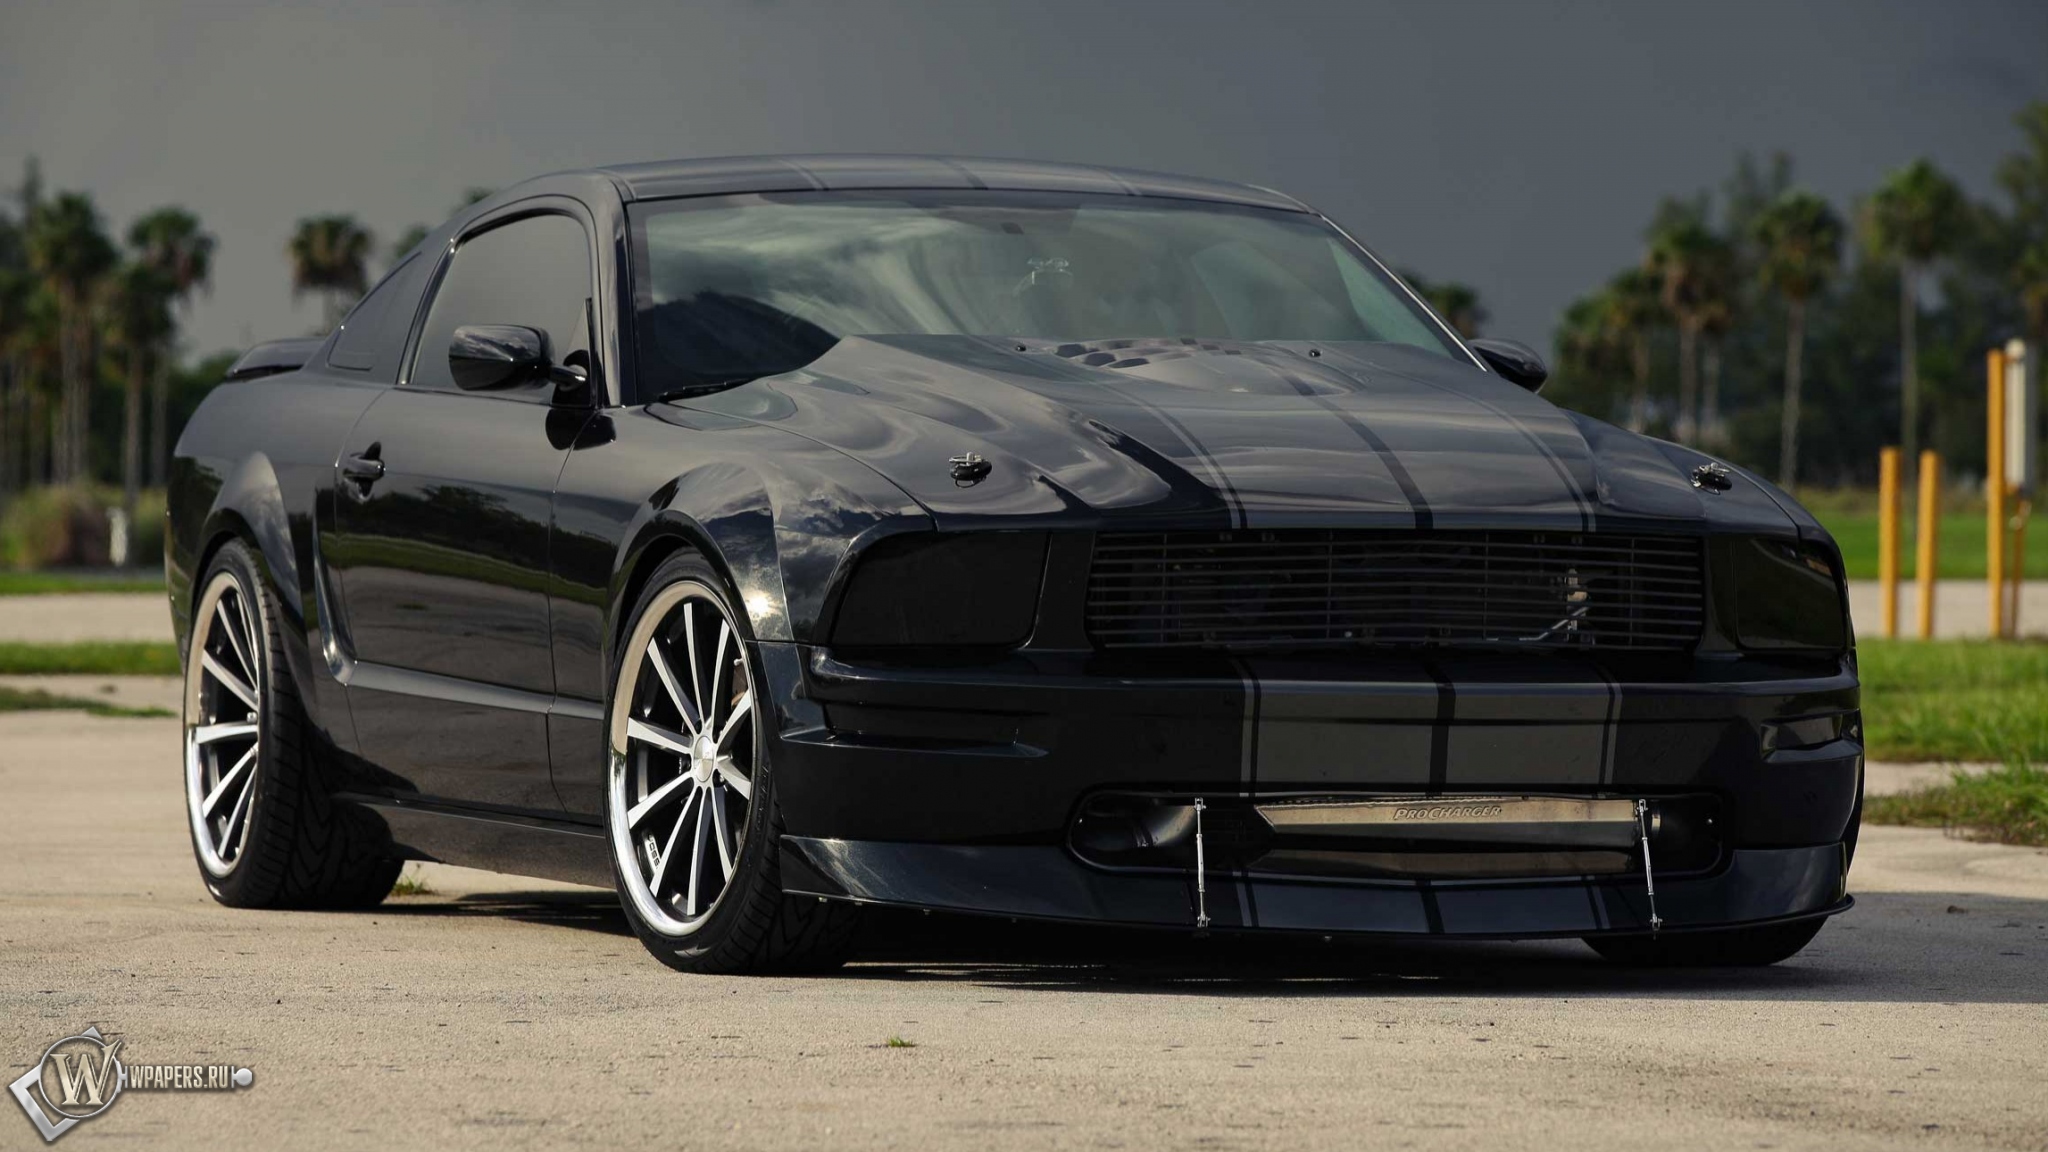 Mustang - Vossen Wheels 2048x1152